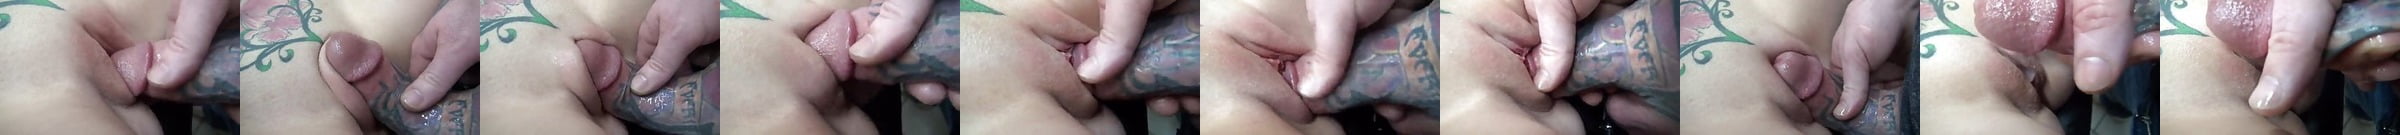 Featured Massage Porn Videos 35 Xhamster